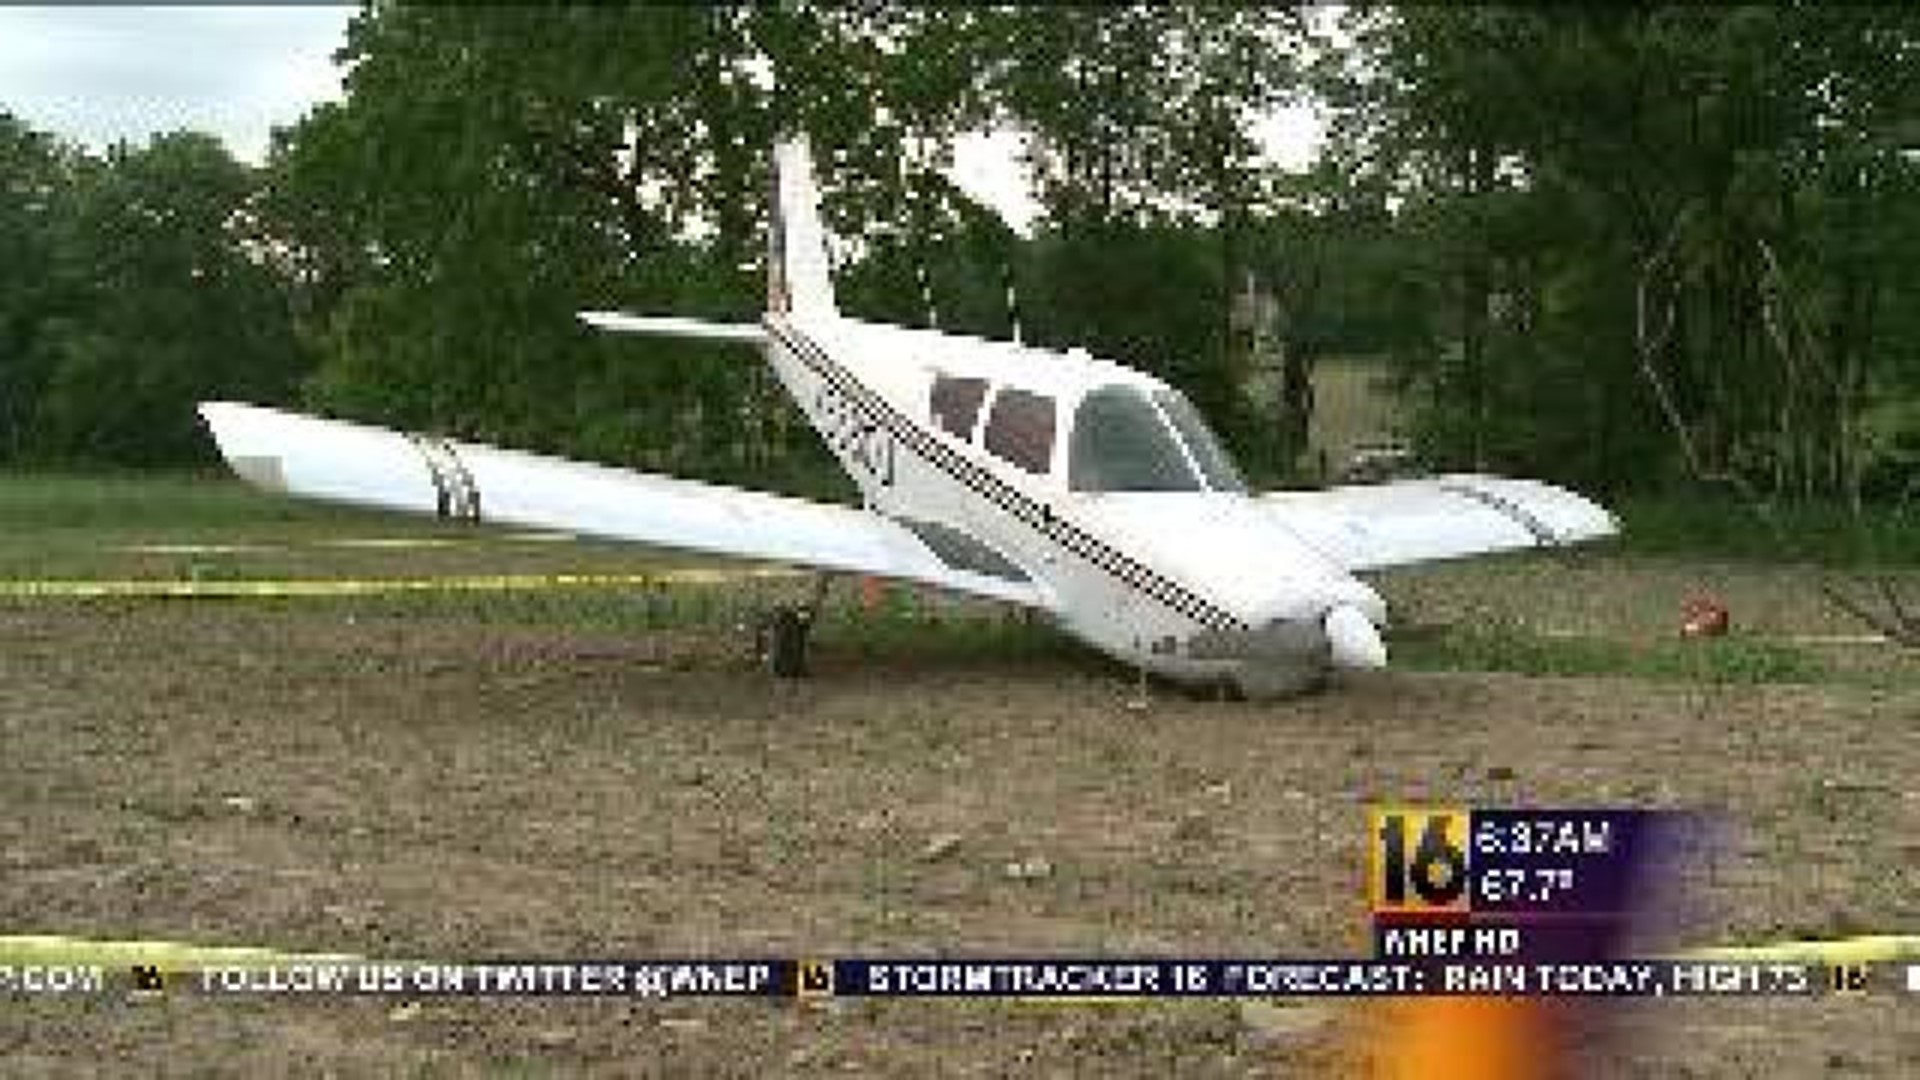 Pilot Alive After Plane Crash